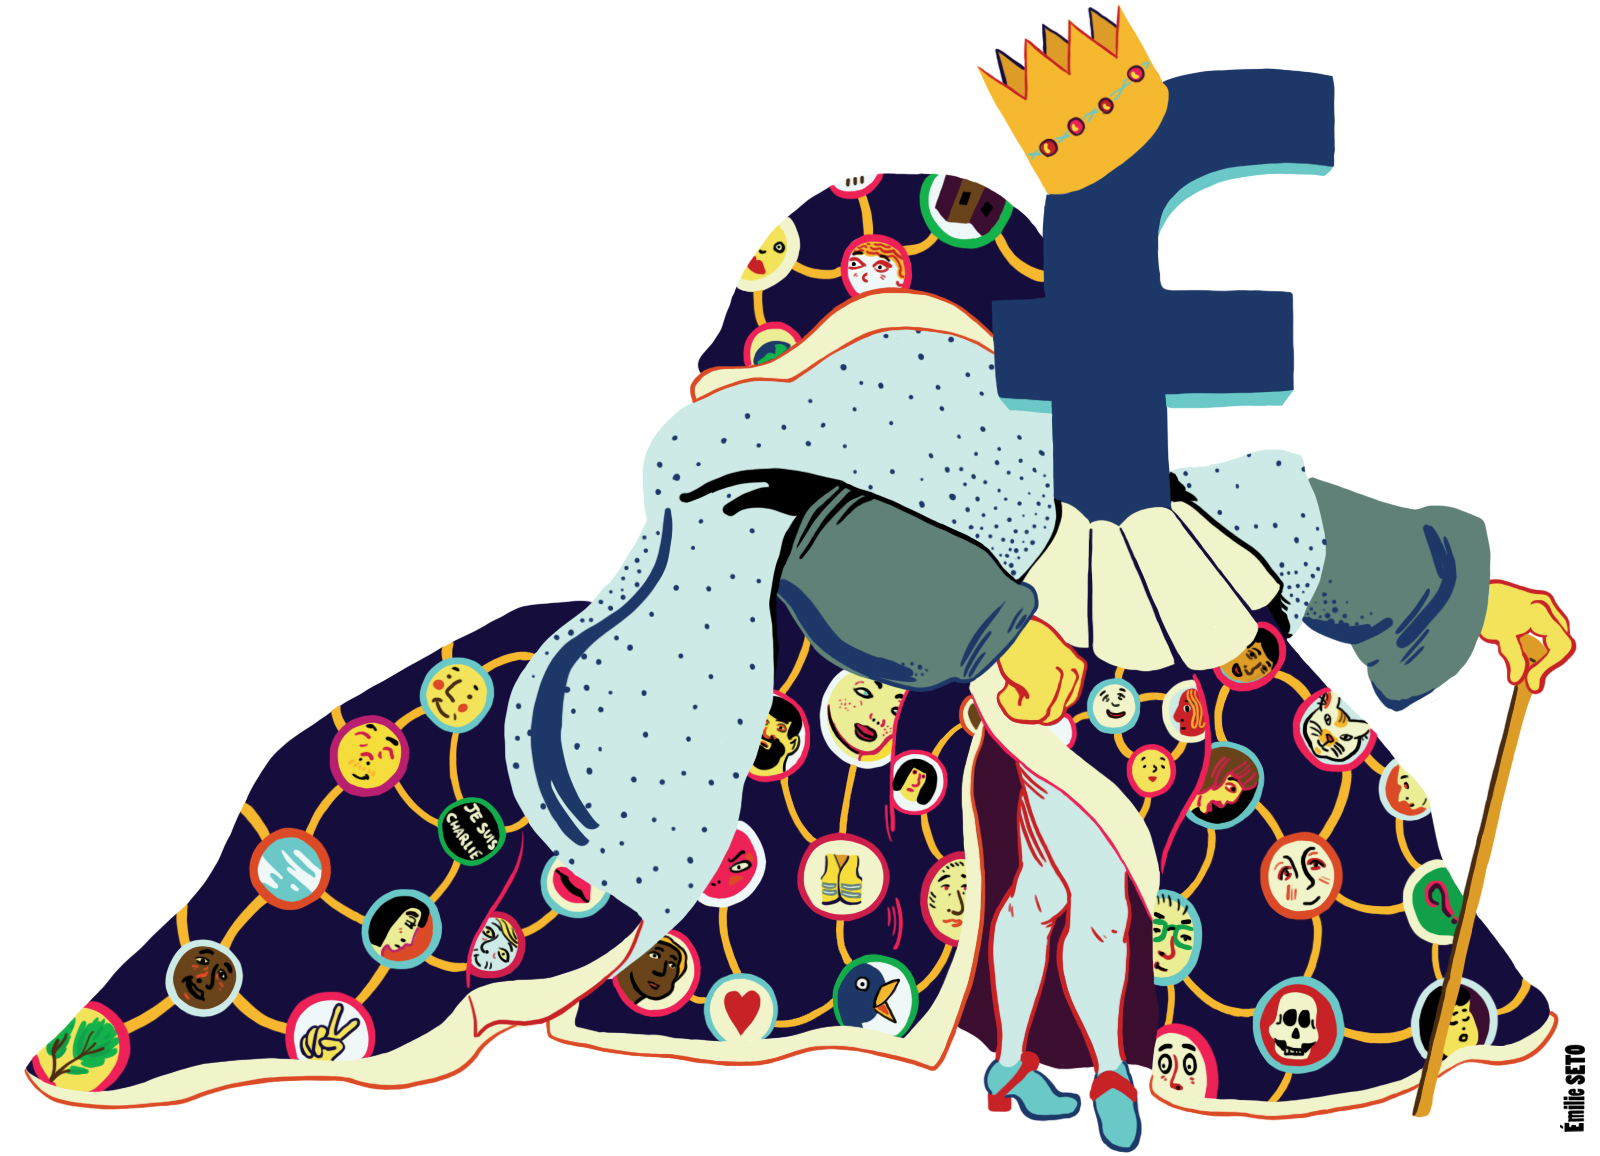 Illustration représentant le logo Facebook avec des vêtements de la royauté et une pose royale